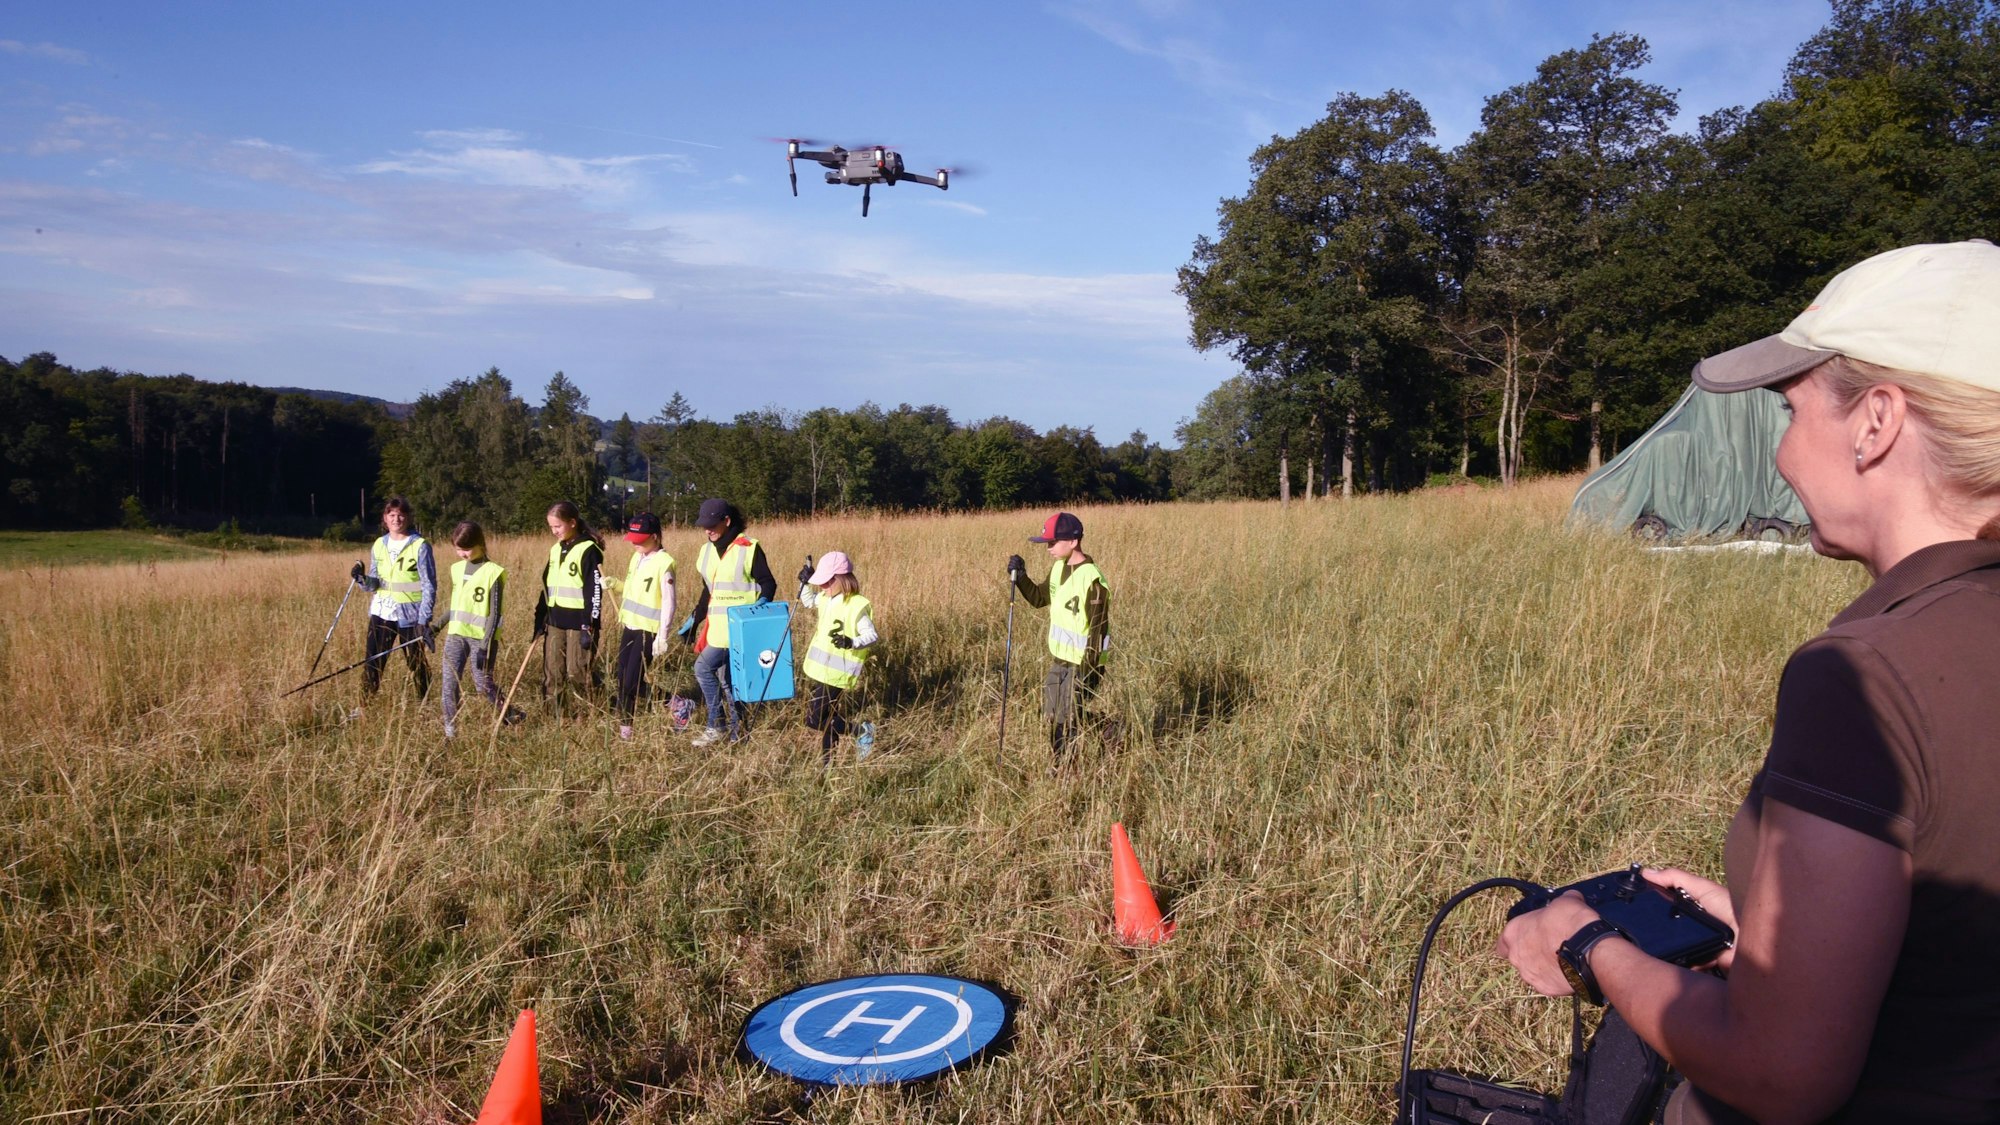 Jugendliche suchen im Gras nach Rehkitzen, eine Drohne mit Wärmebildkamera hilft bei der Suche.